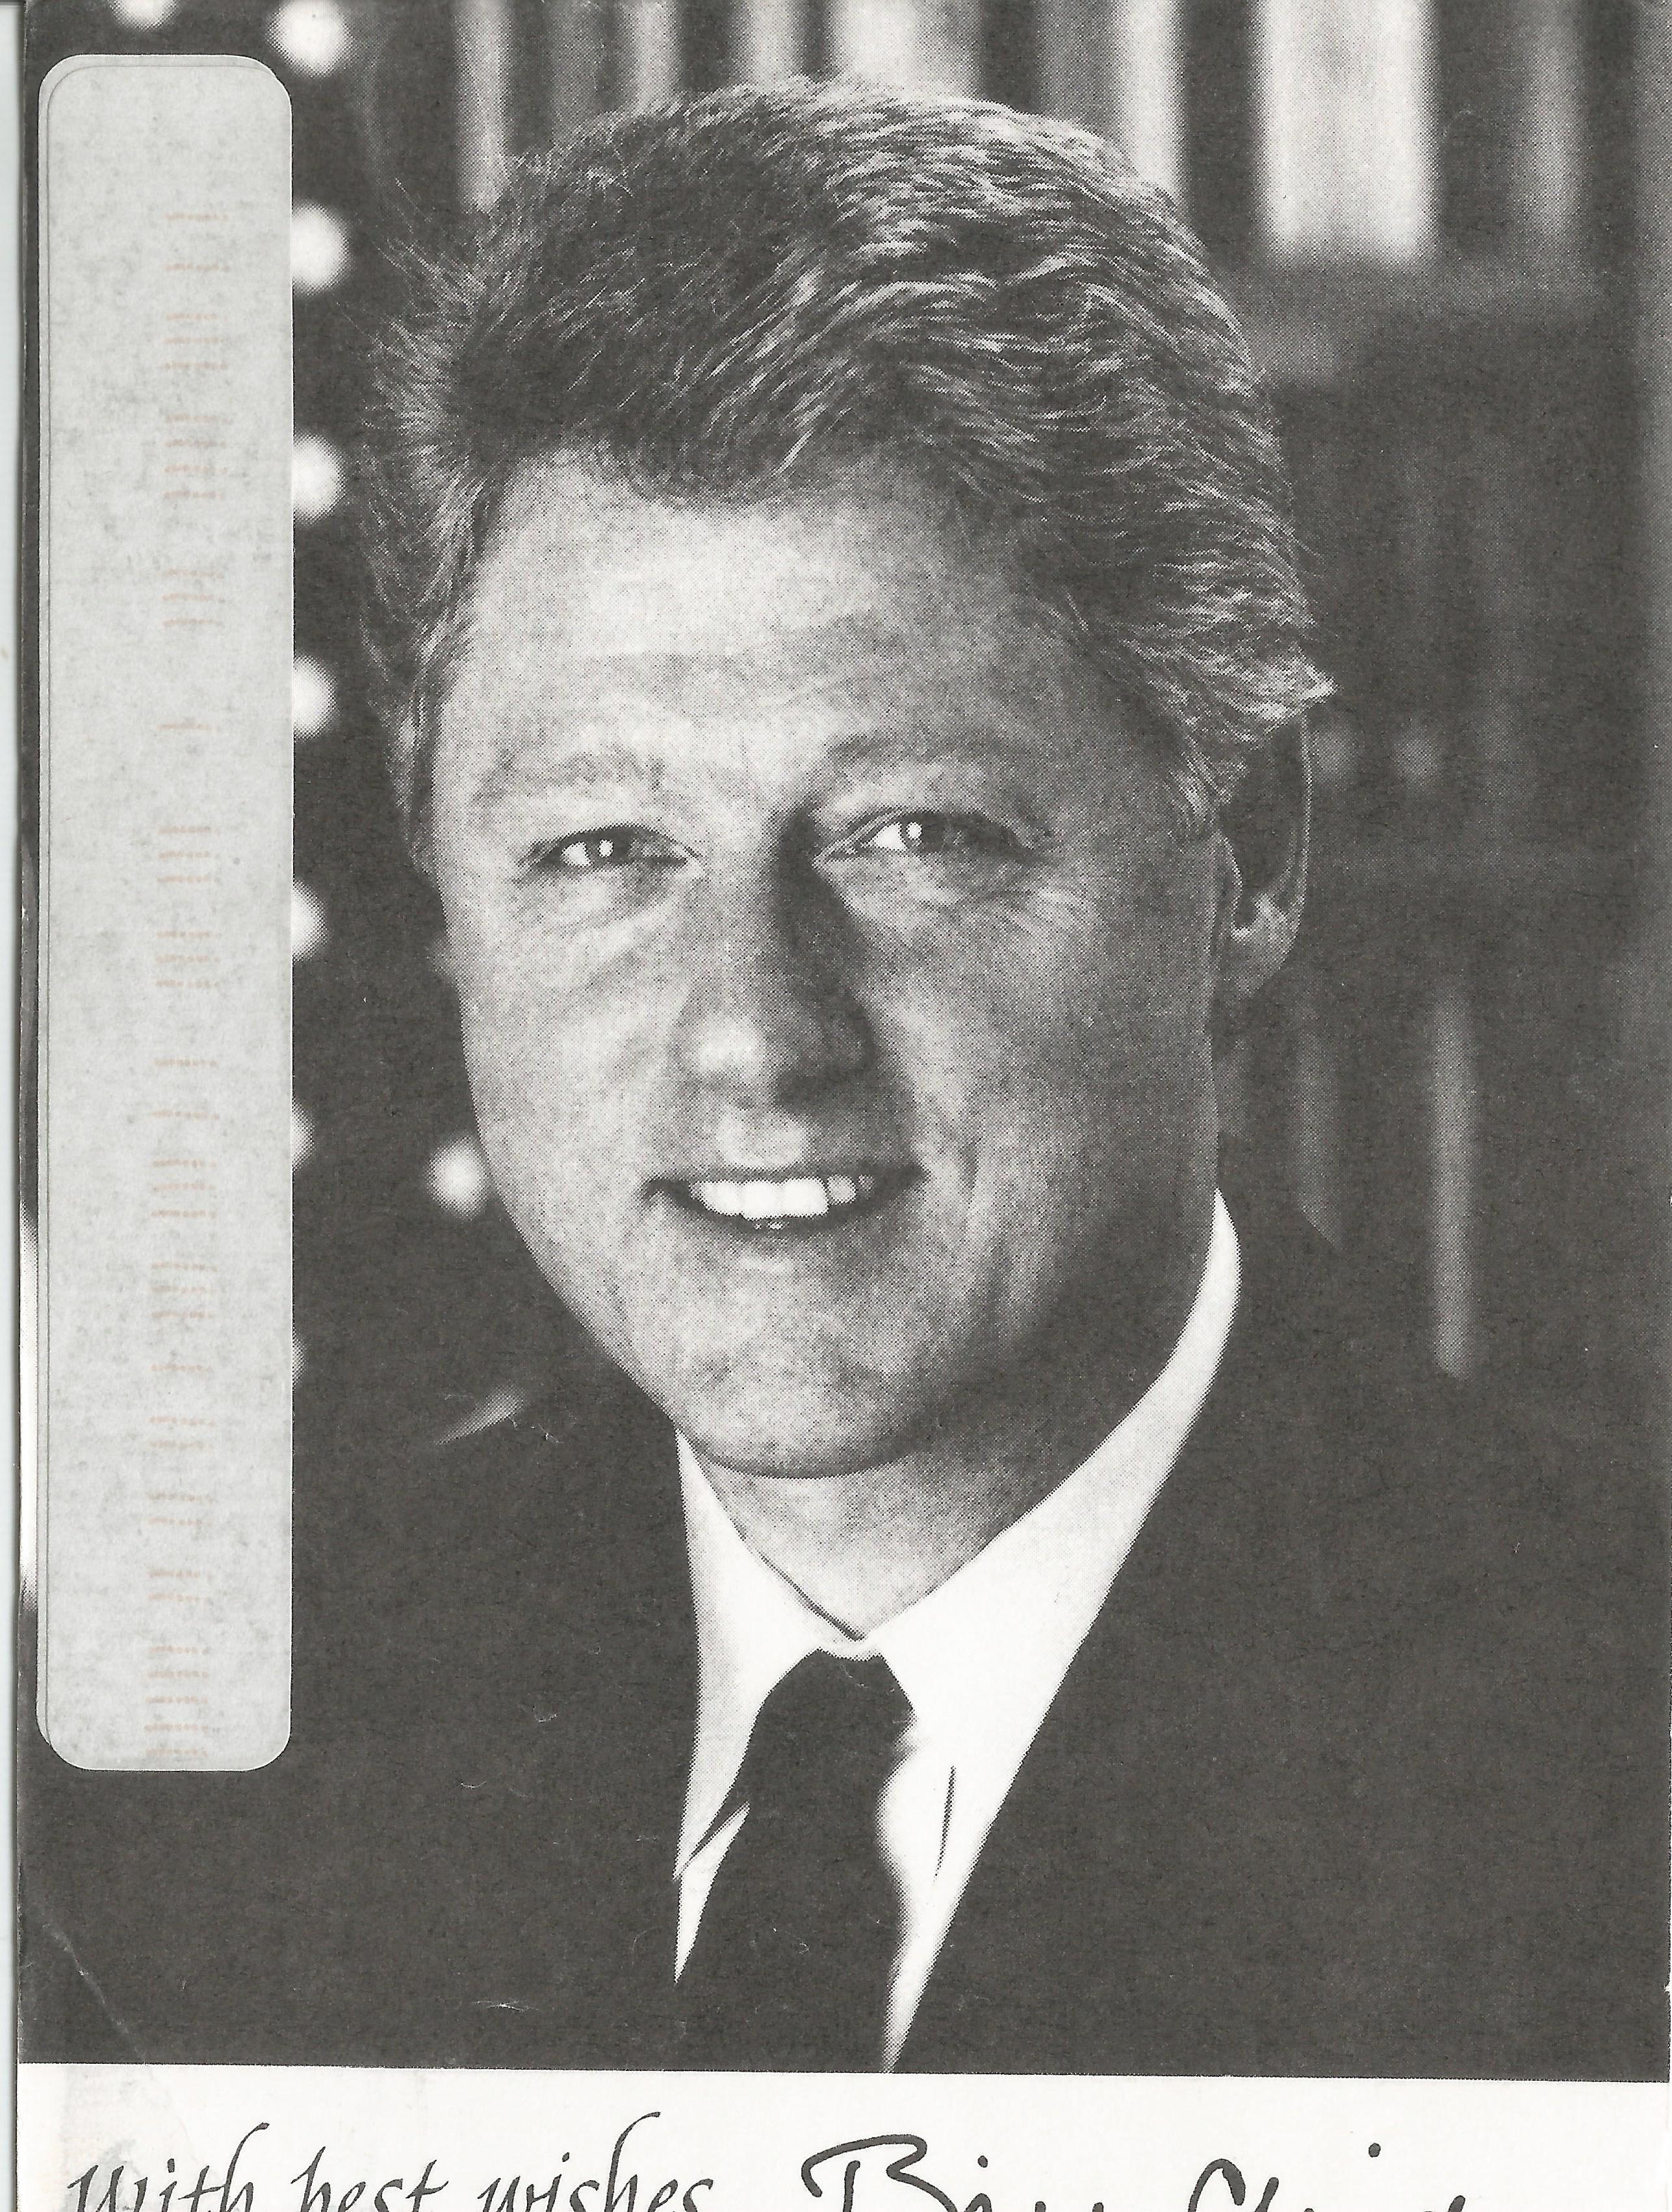 Clinton Portrait postcard